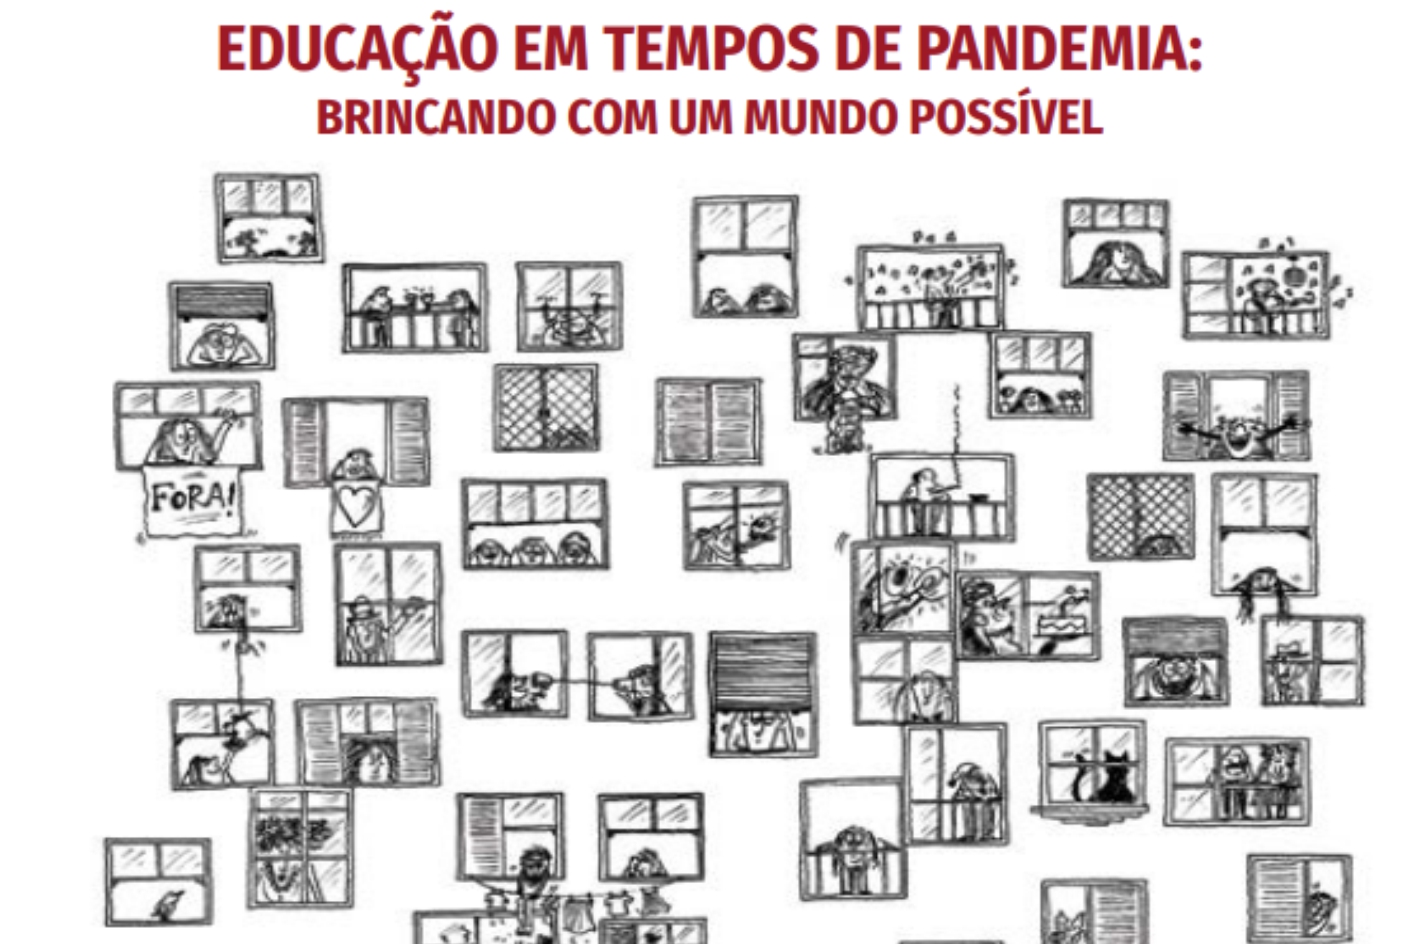 Imagem contendo capa do livro Educação em tempos de pandemia.